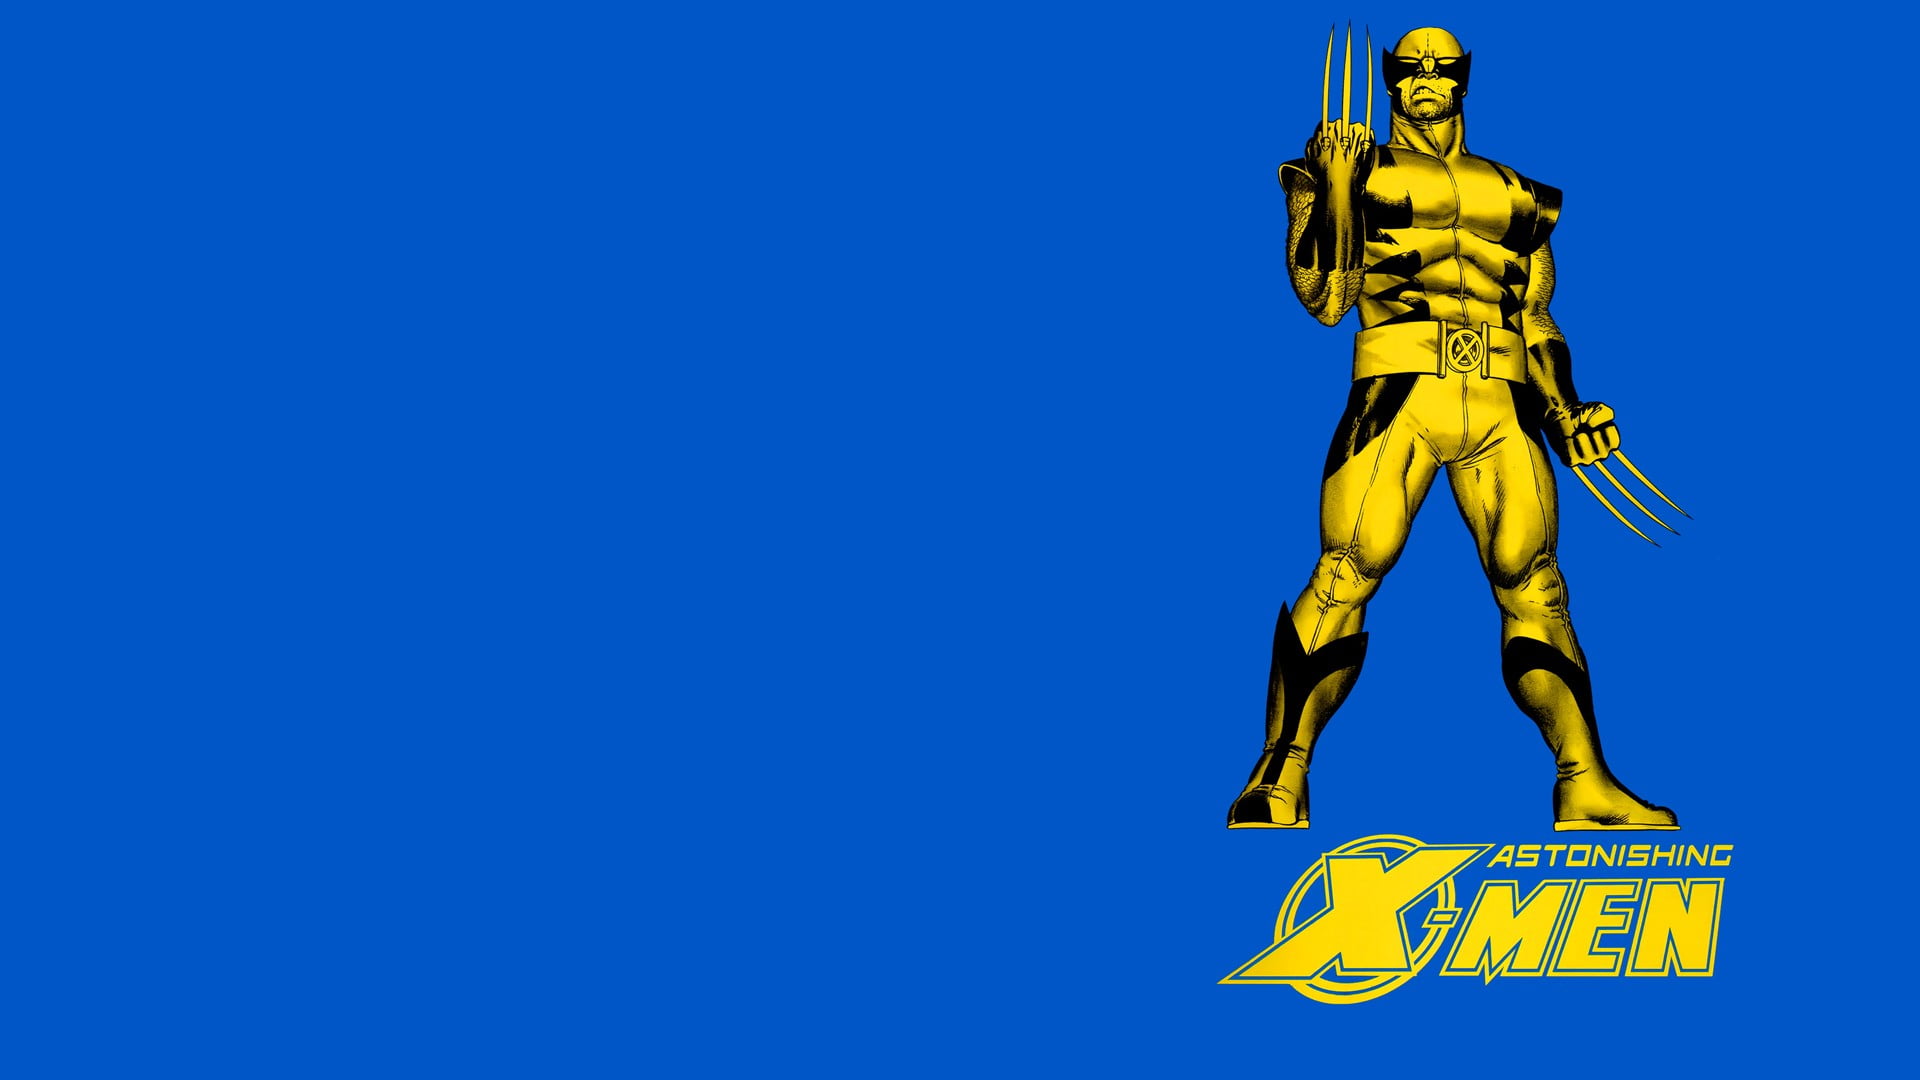 X-men wallpaper, comics, Wolverine, human representation, blue